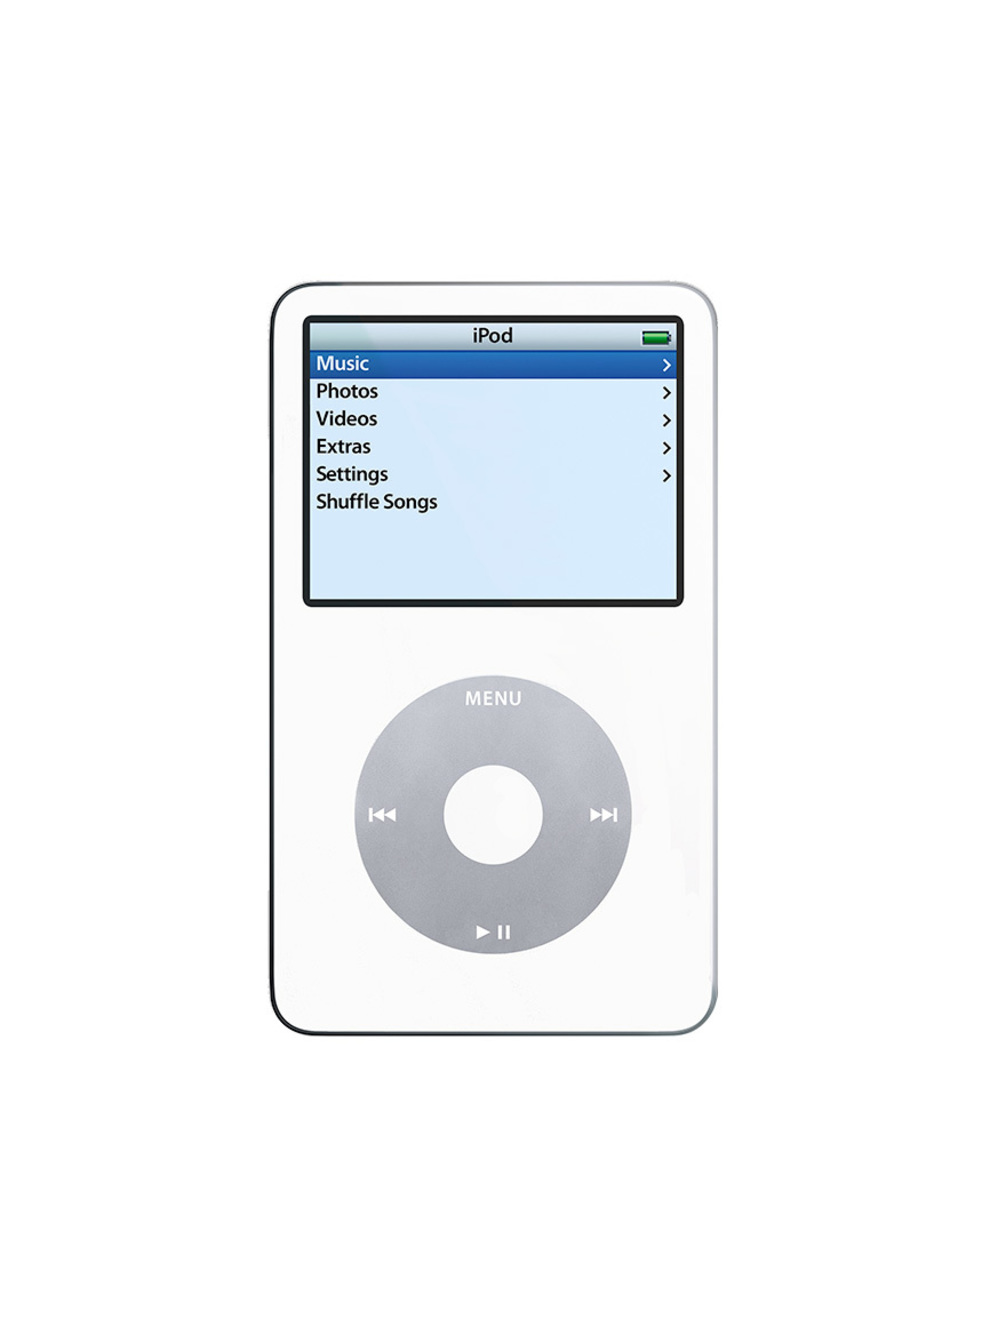 En 2004, Apple refin el diseo del iPod con una pantalla a color...